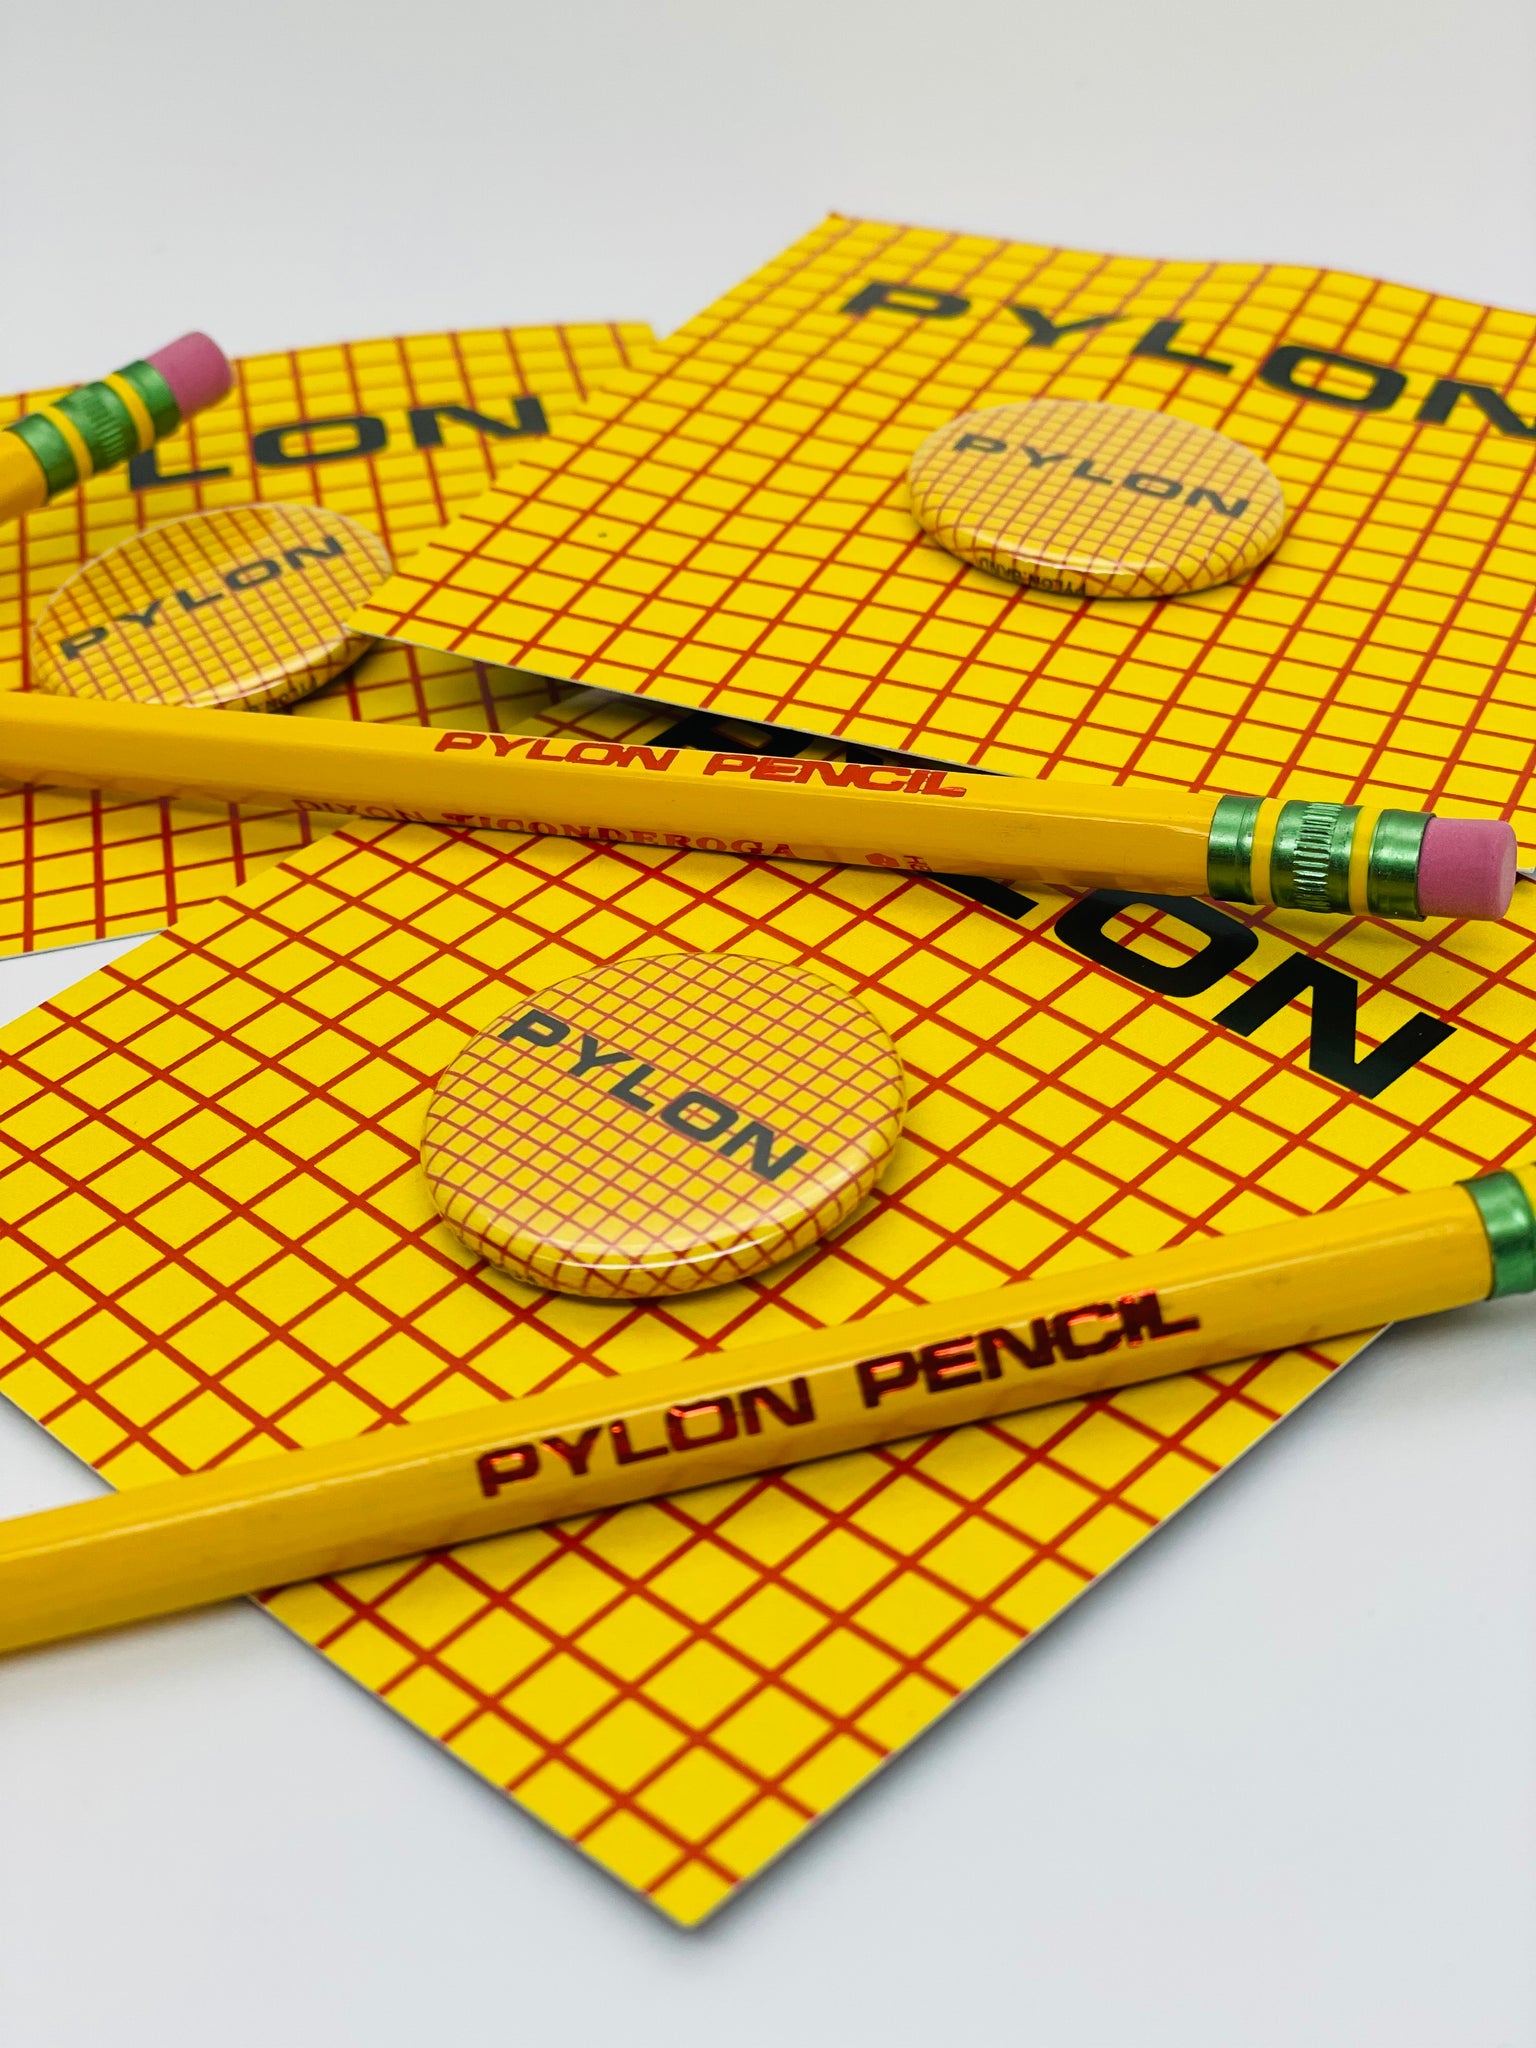 Pylon Button & Pencil Pack